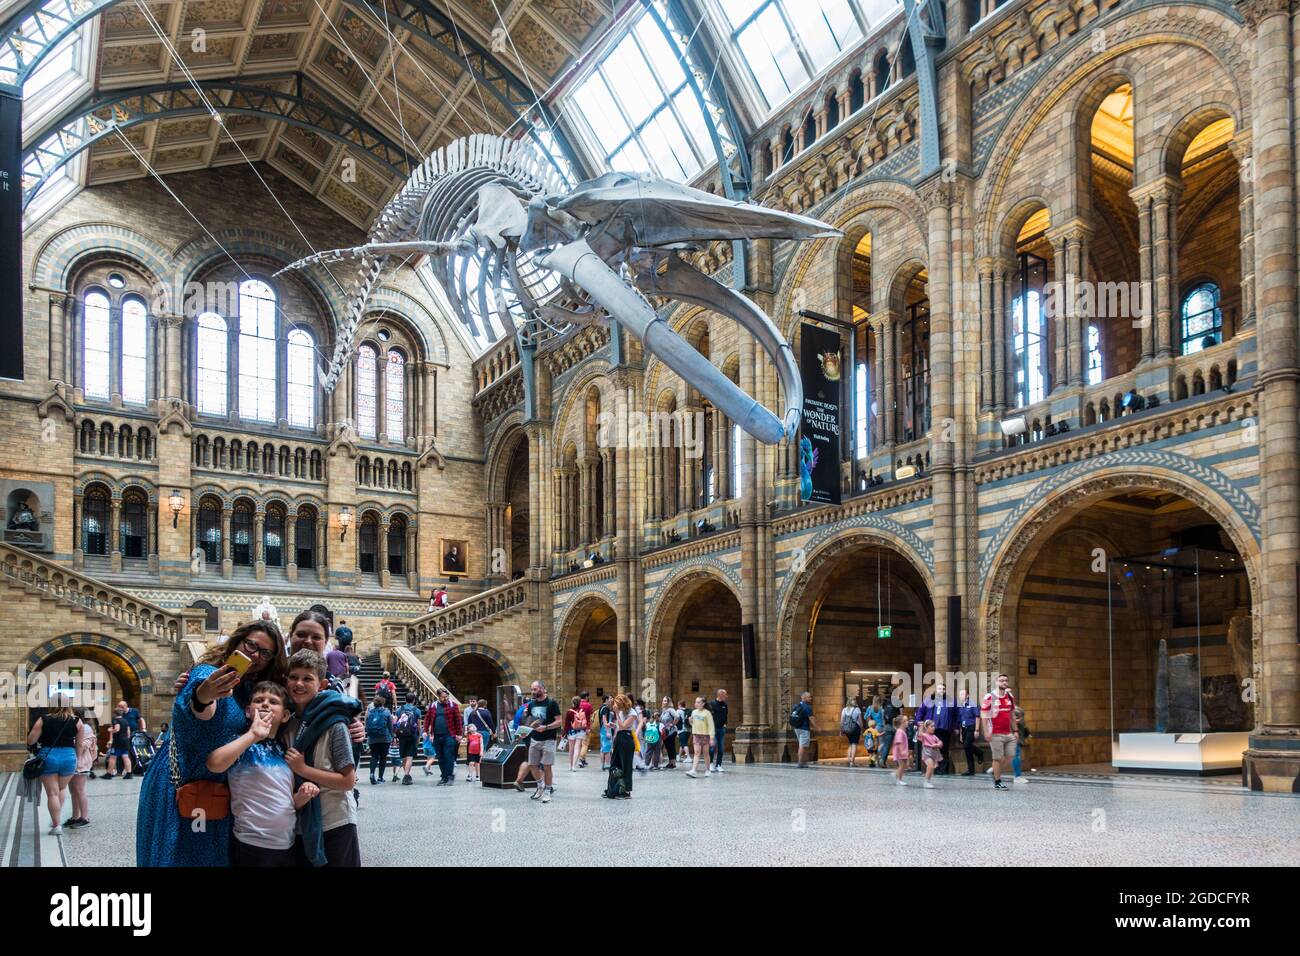 Die Nachbildung des großen Walskeletts im Natural History Museum in London Stockfoto